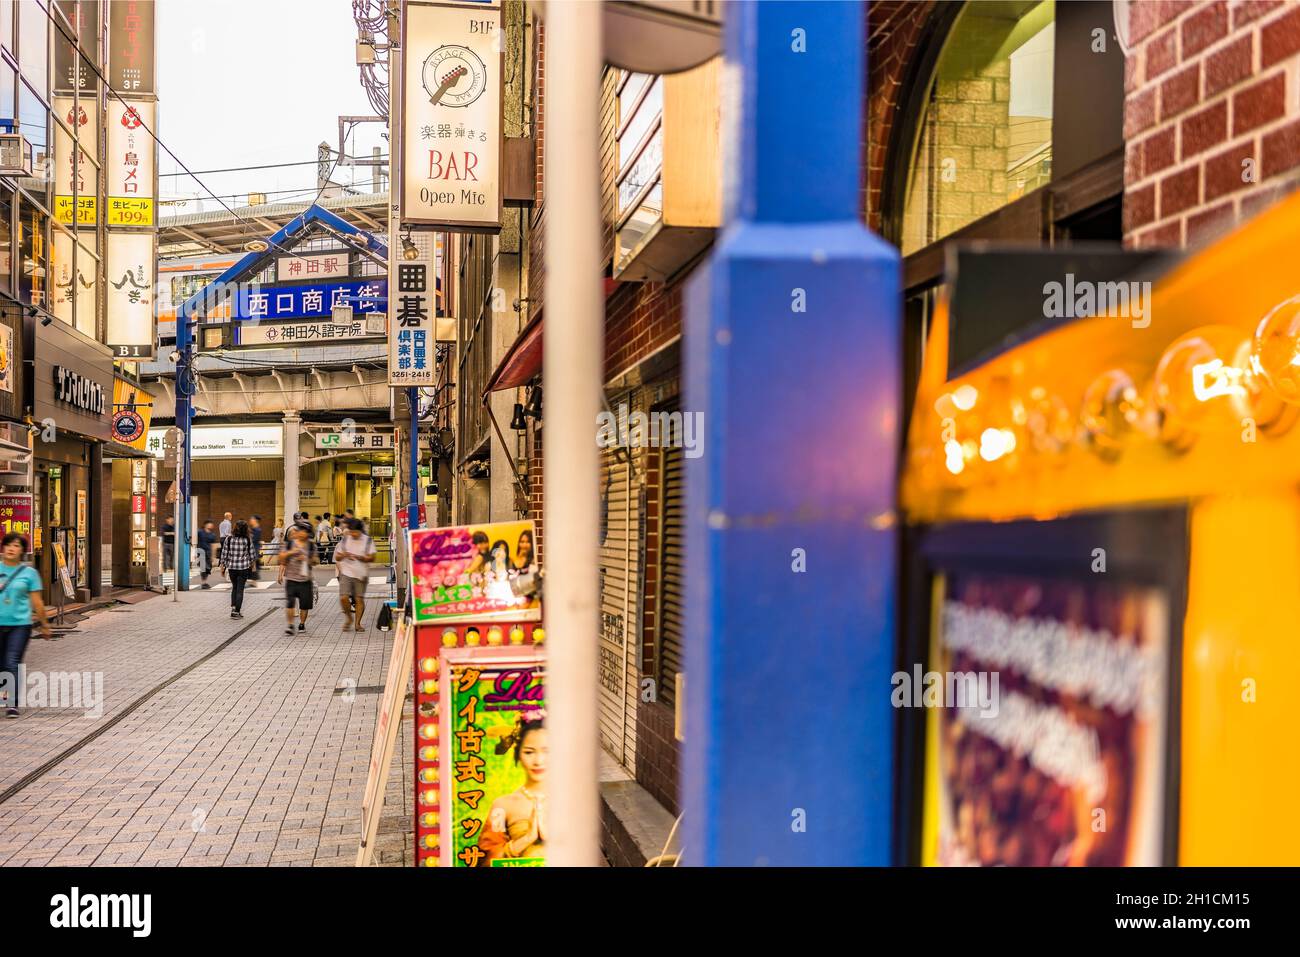 Porta d'ingresso in metallo blu e indicazioni al neon nella strada dello shopping dall'uscita ovest della stazione di Kanda sulla linea Yamanote. La strada si estende per oltre 300 m. Foto Stock